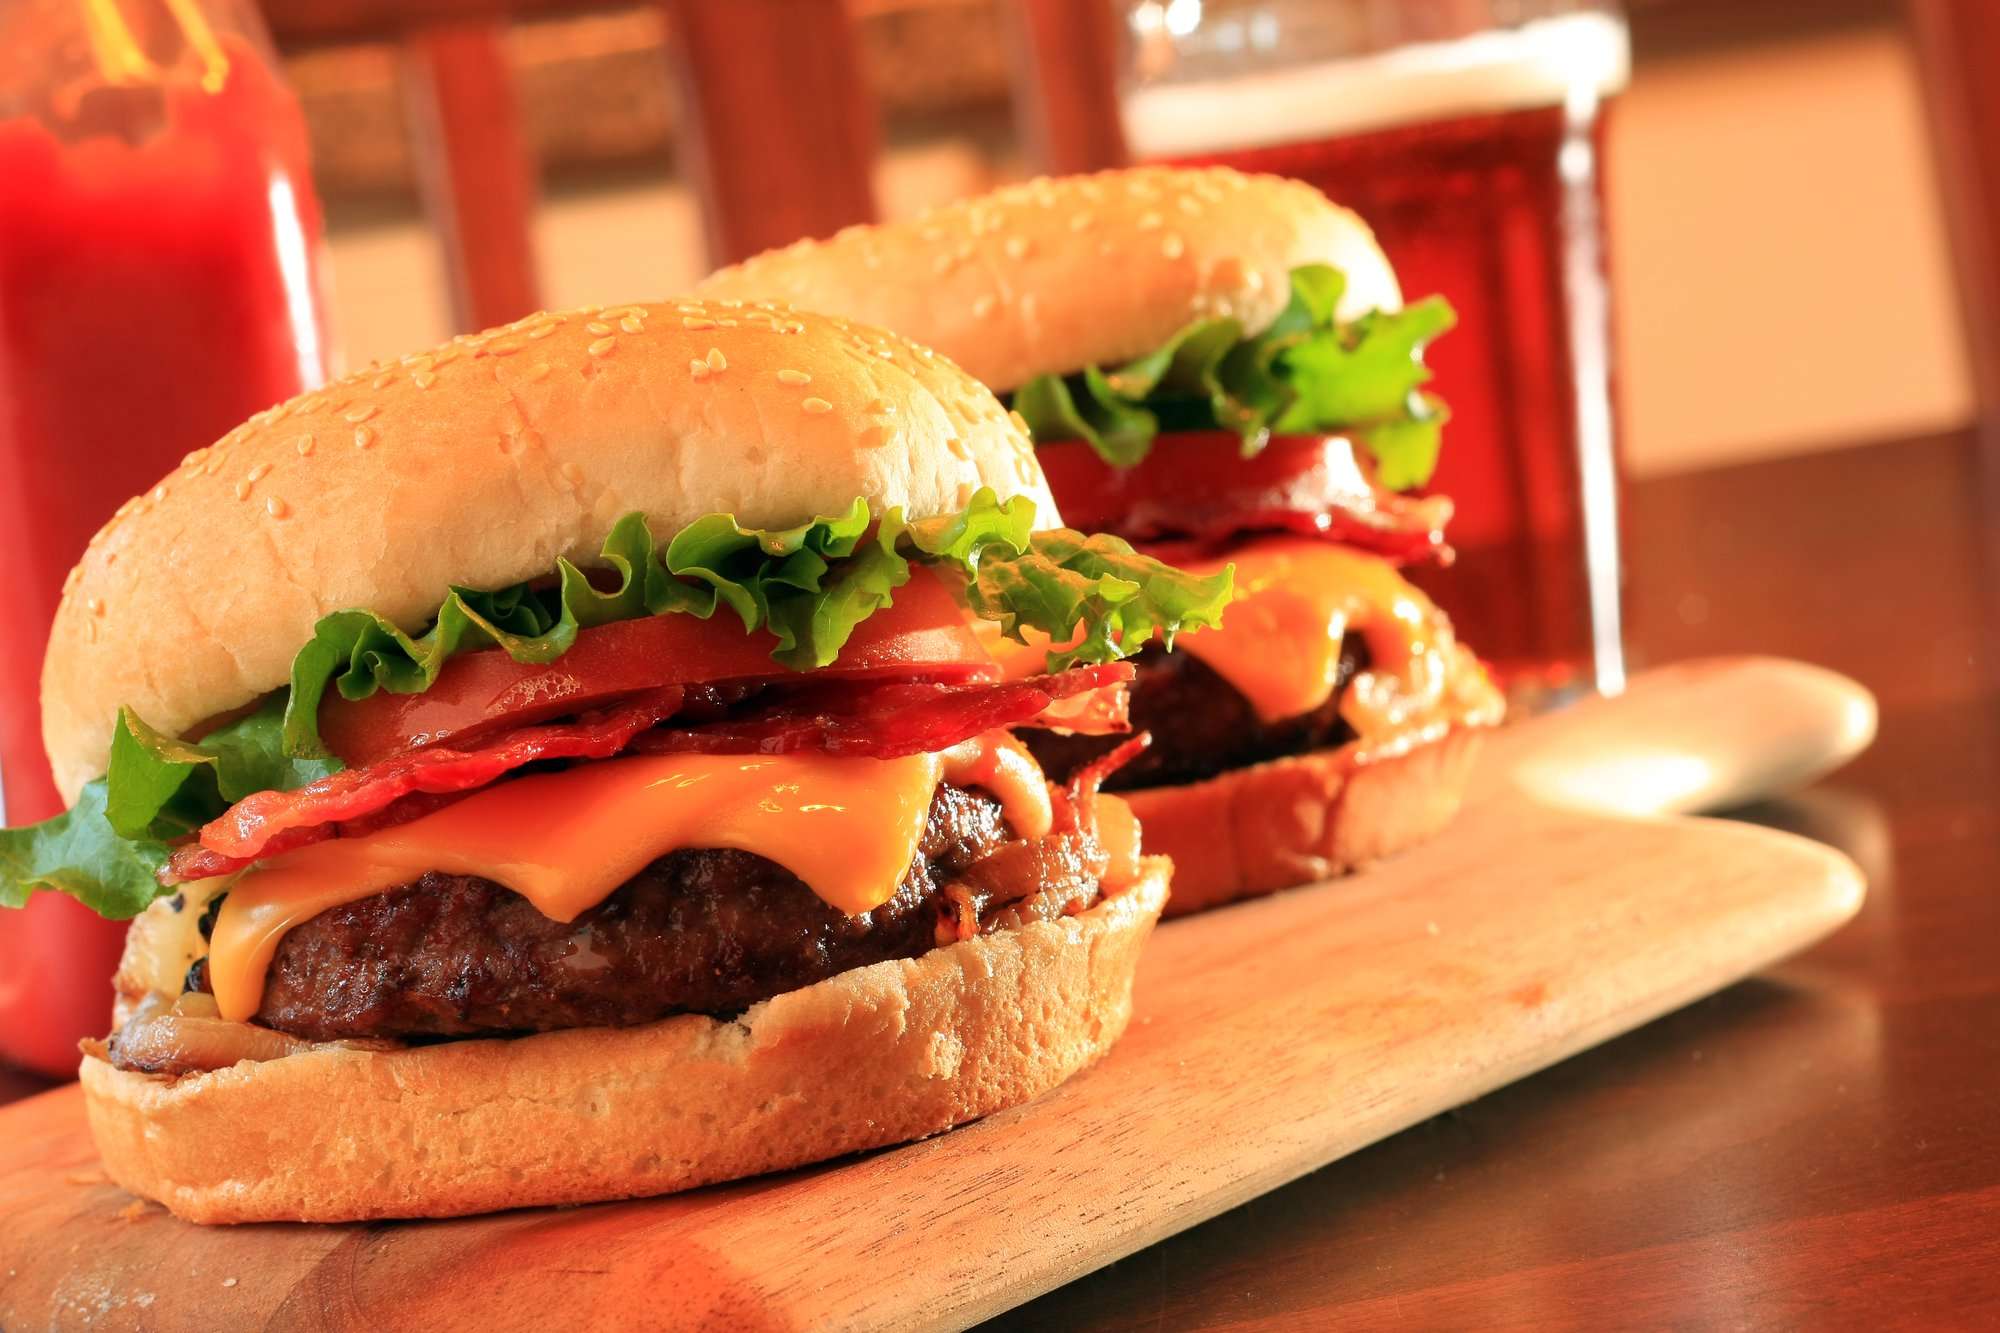 تبریک روز جهانی همبرگر با آموزش همبرگر خانگی در مجله باسلام